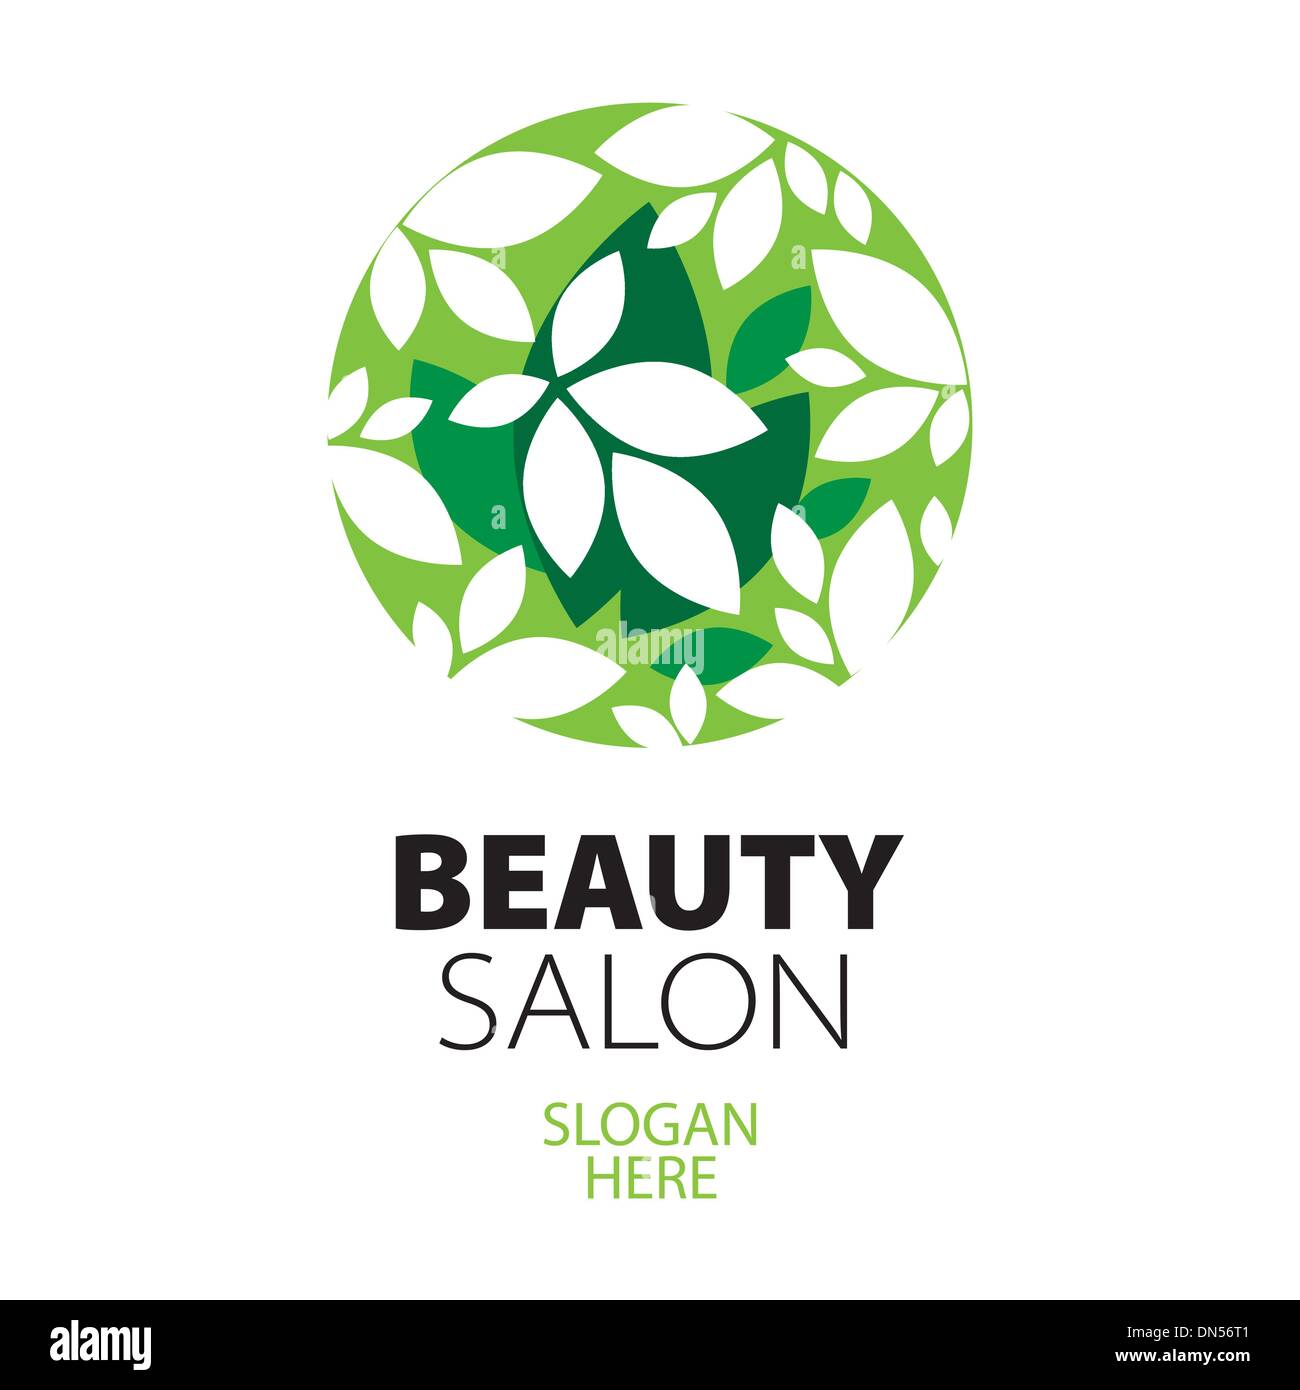 green ball of leaves logo for beauty salon Stock Vector